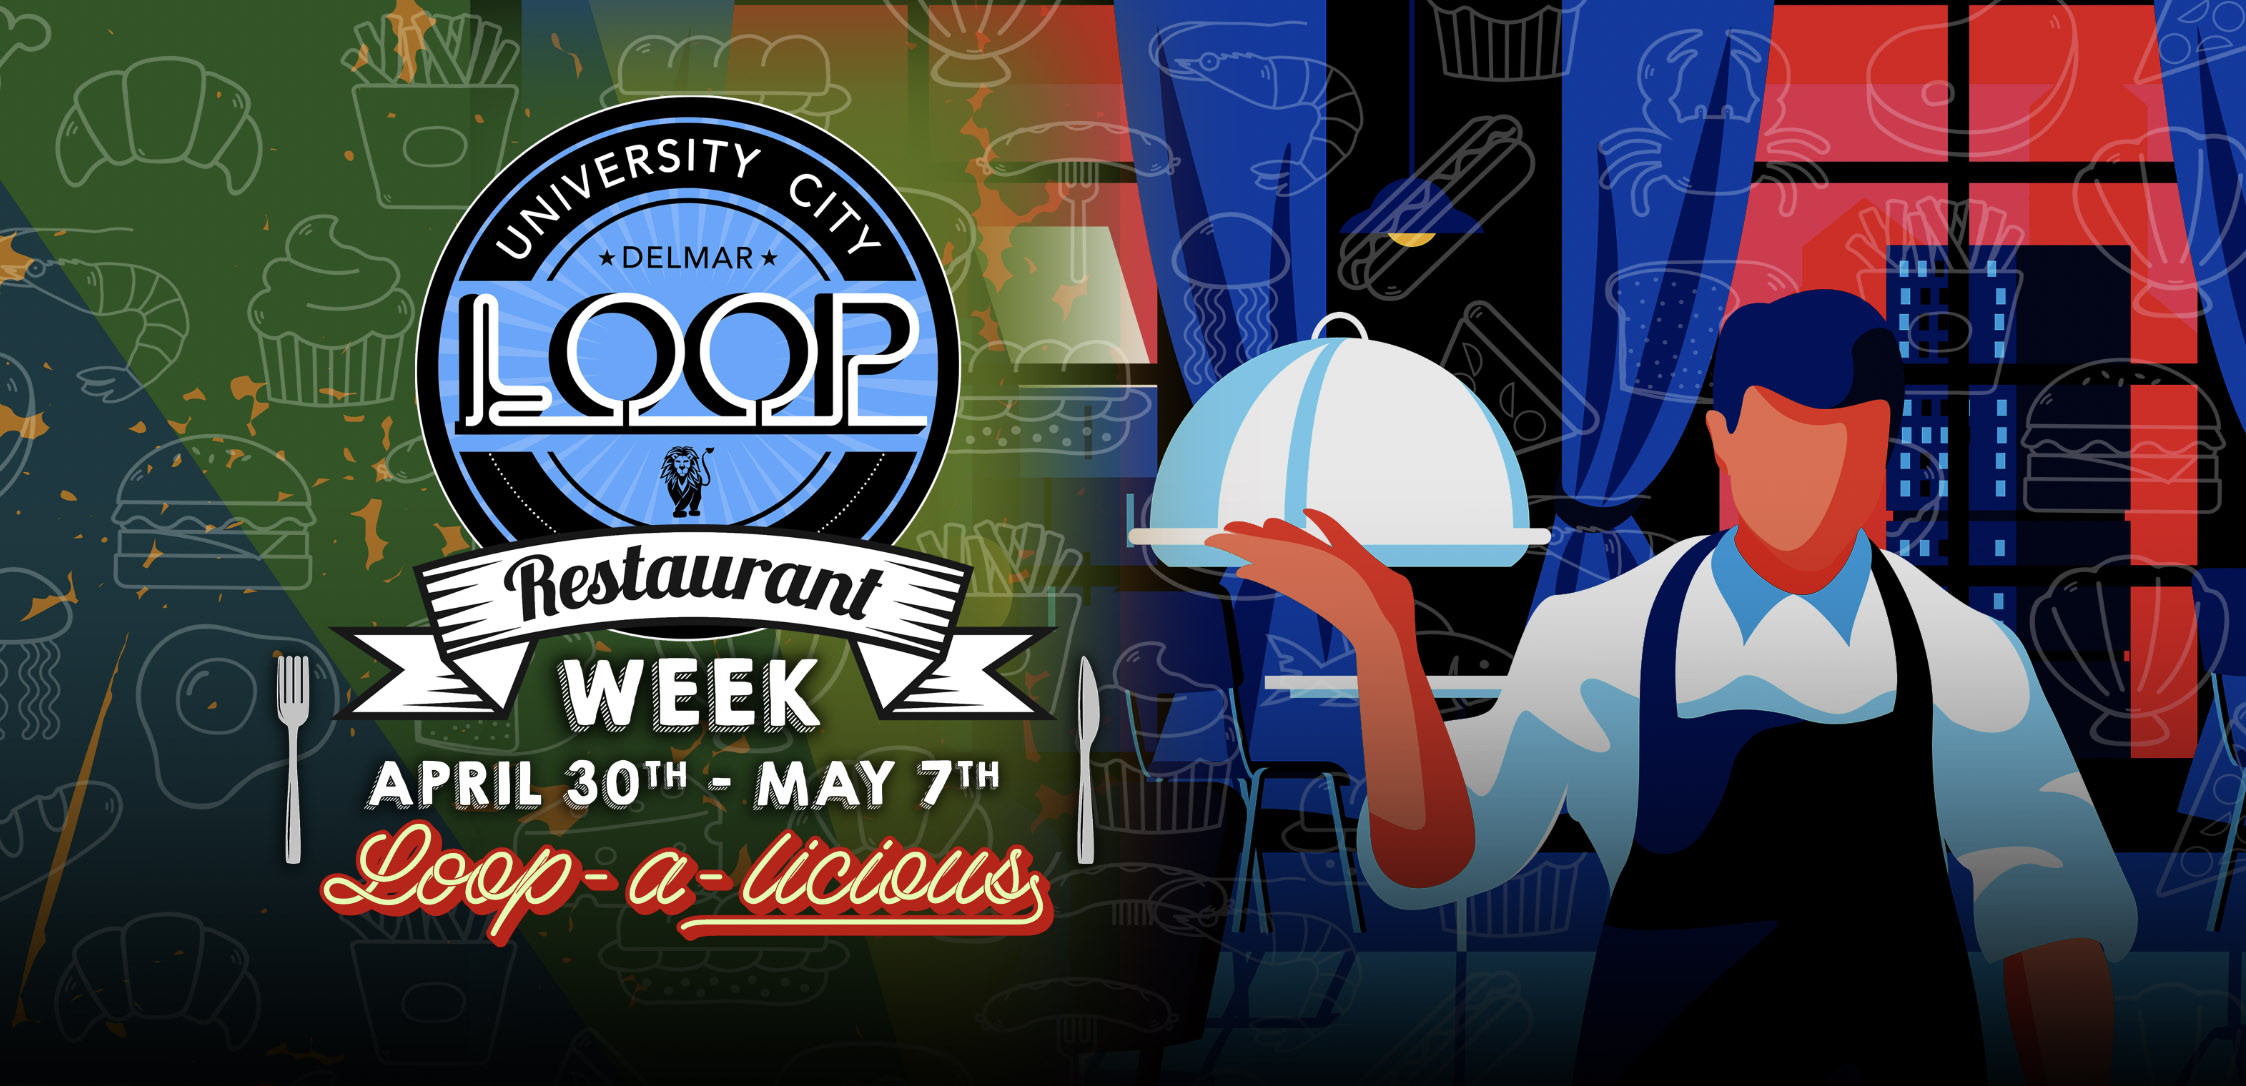 Loop-a-licious - Restaurant Week - The Loop